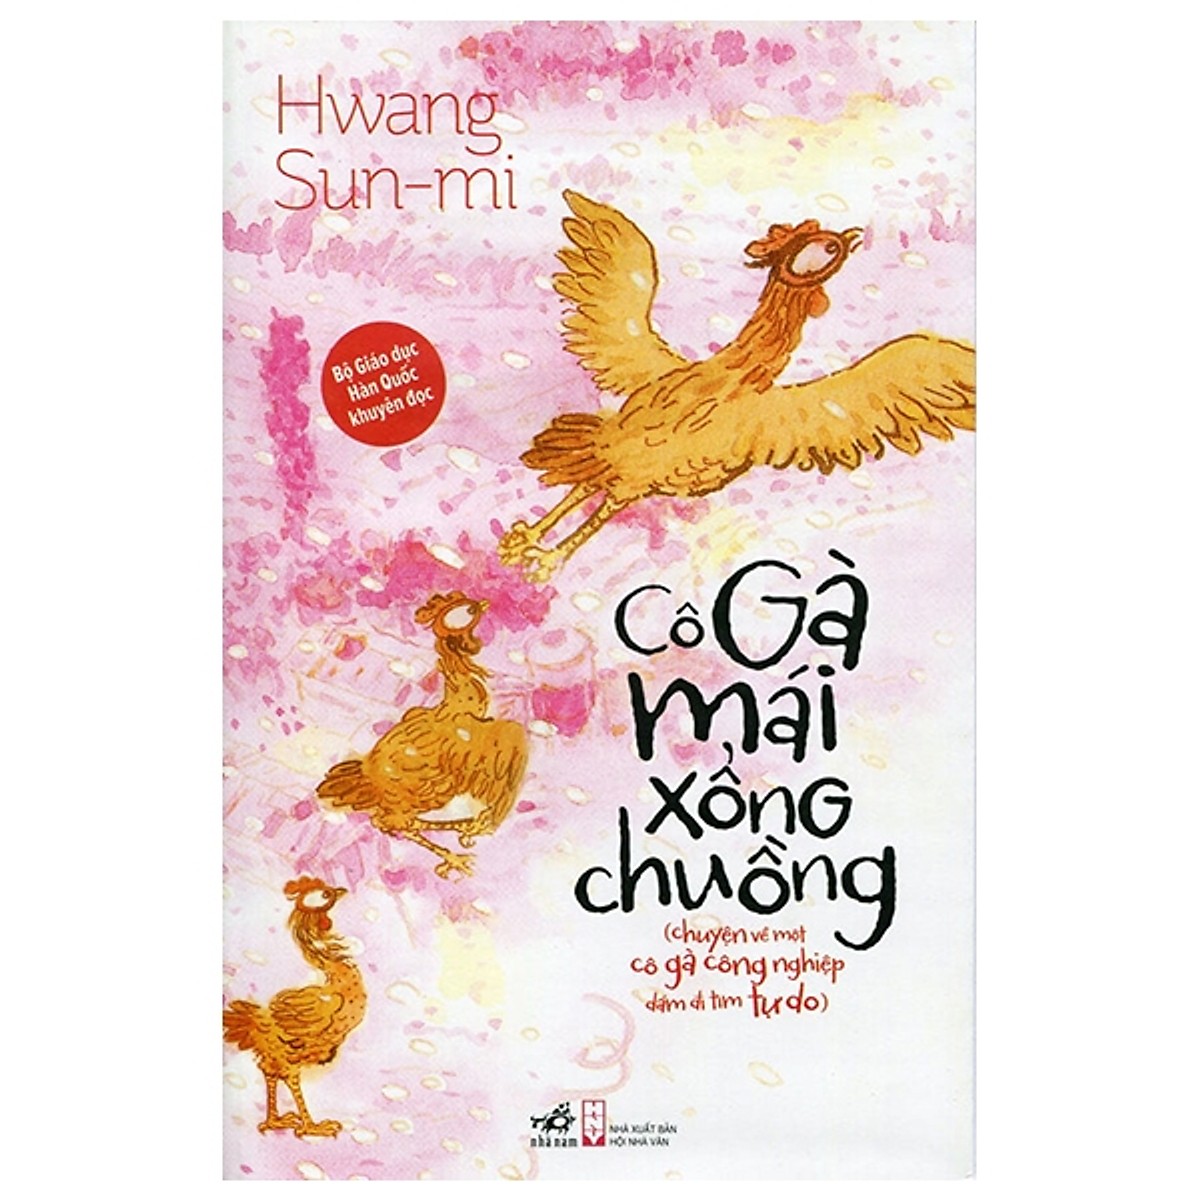 Cuốn sách được yêu thích của hàng triệu thiếu nhi tại Hàn Quốc: Cô gà mái xổng chuồng (TB)